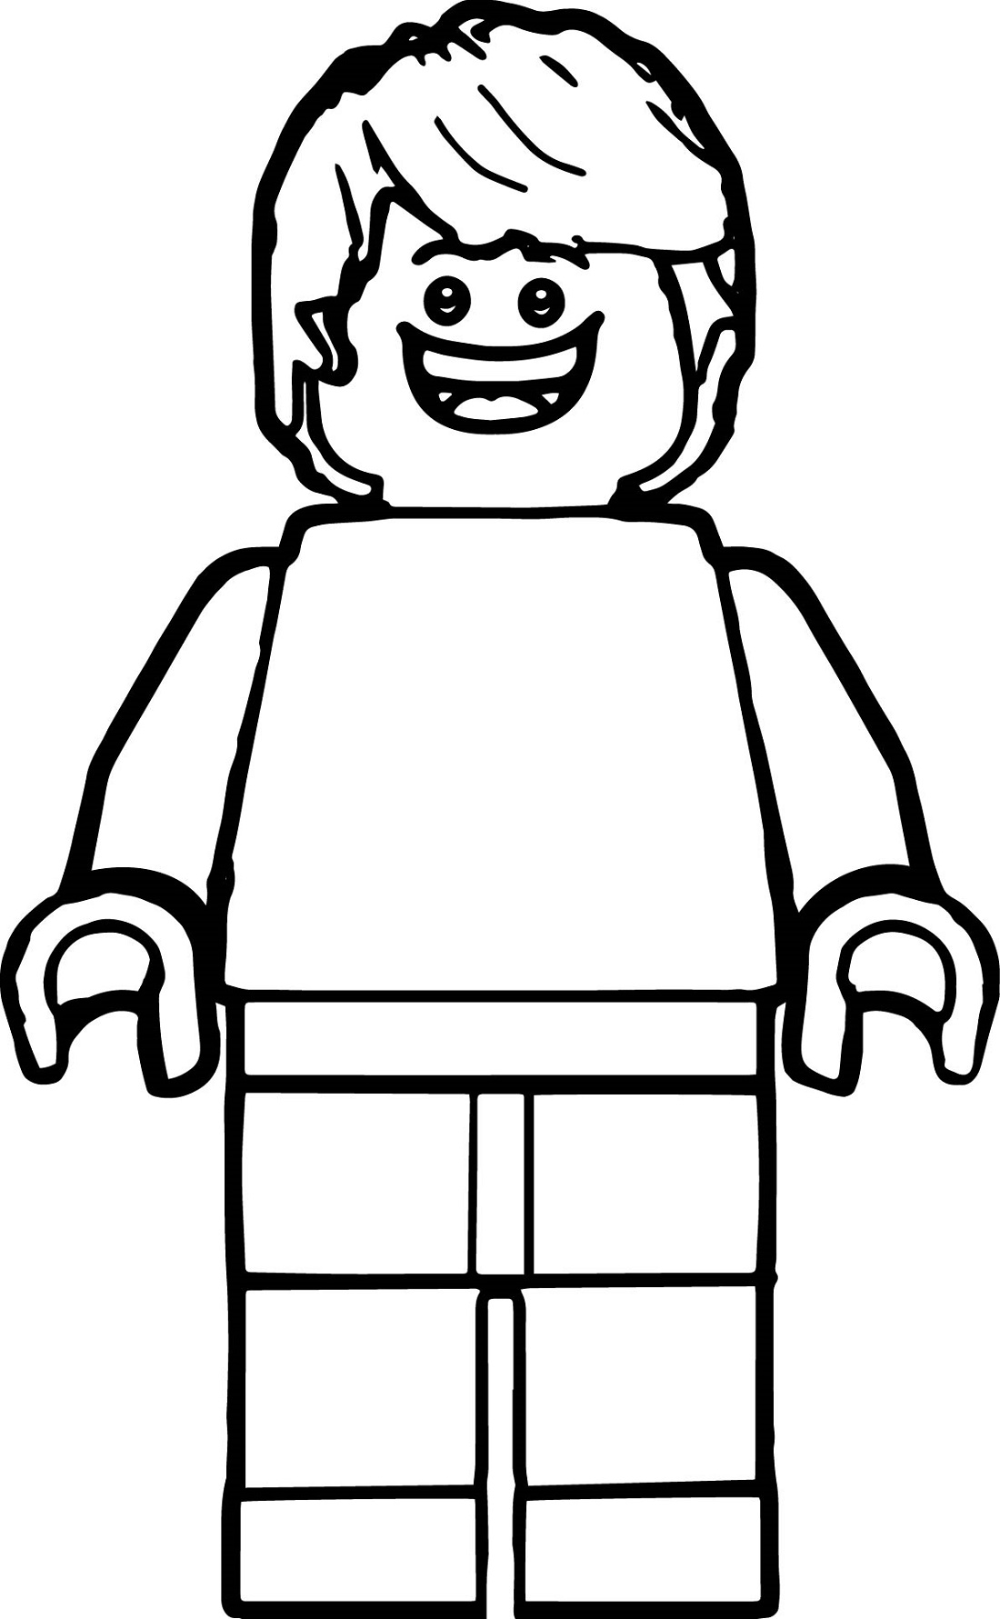 Lego man coloring page boyama sayfalarä yazdärälabilir renkli sayfalar